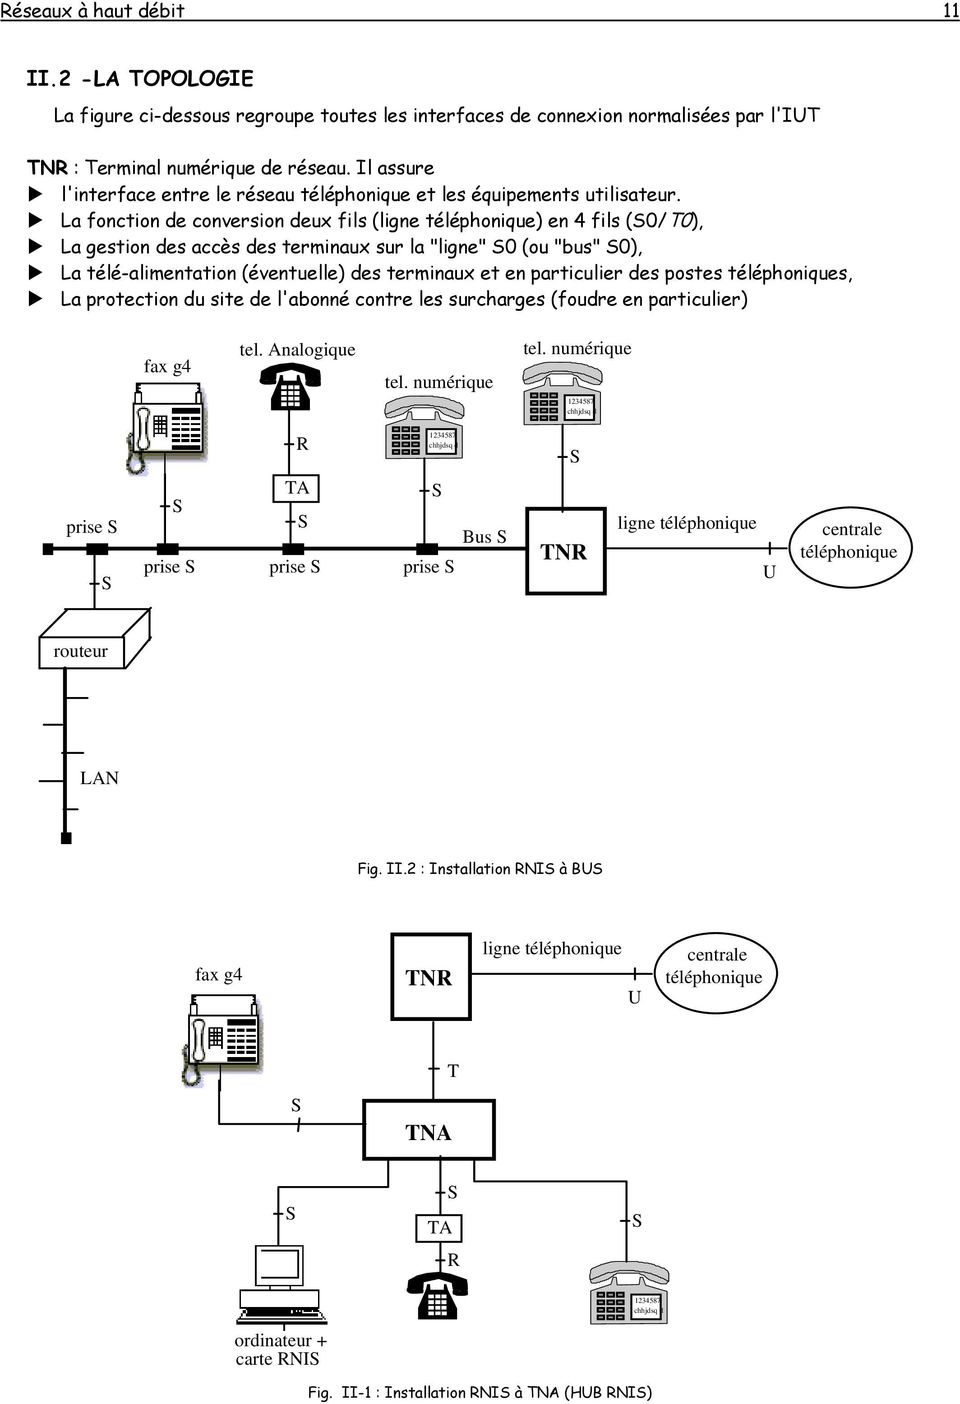 La fonction de conversion deux fils (ligne téléphonique) en 4 fils (S0/T0), La gestion des accès des terminaux sur la "ligne" S0 (ou "bus" S0), La télé-alimentation (éventuelle) des terminaux et en